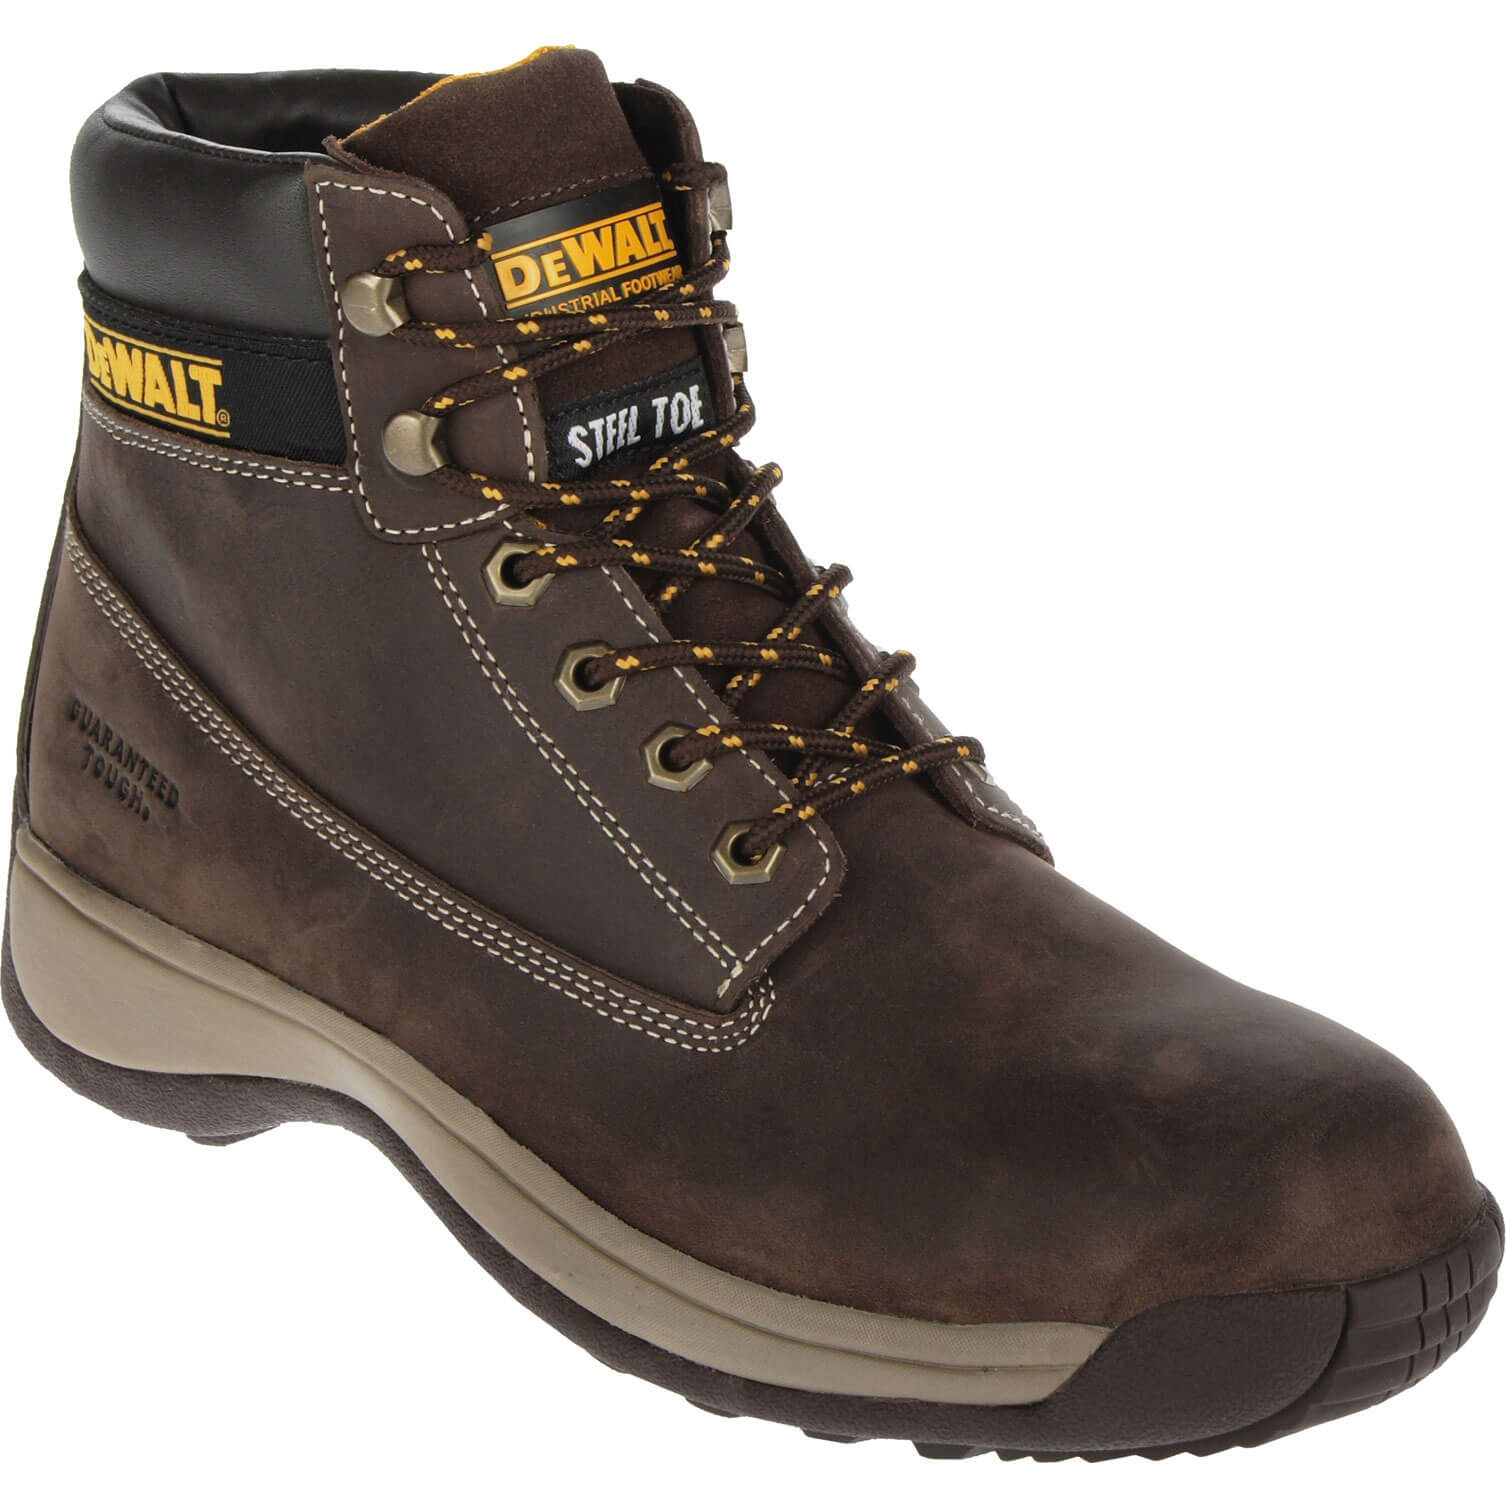 DeWalt Apprentice Nubuck Safety Work Boots Brown Size 8